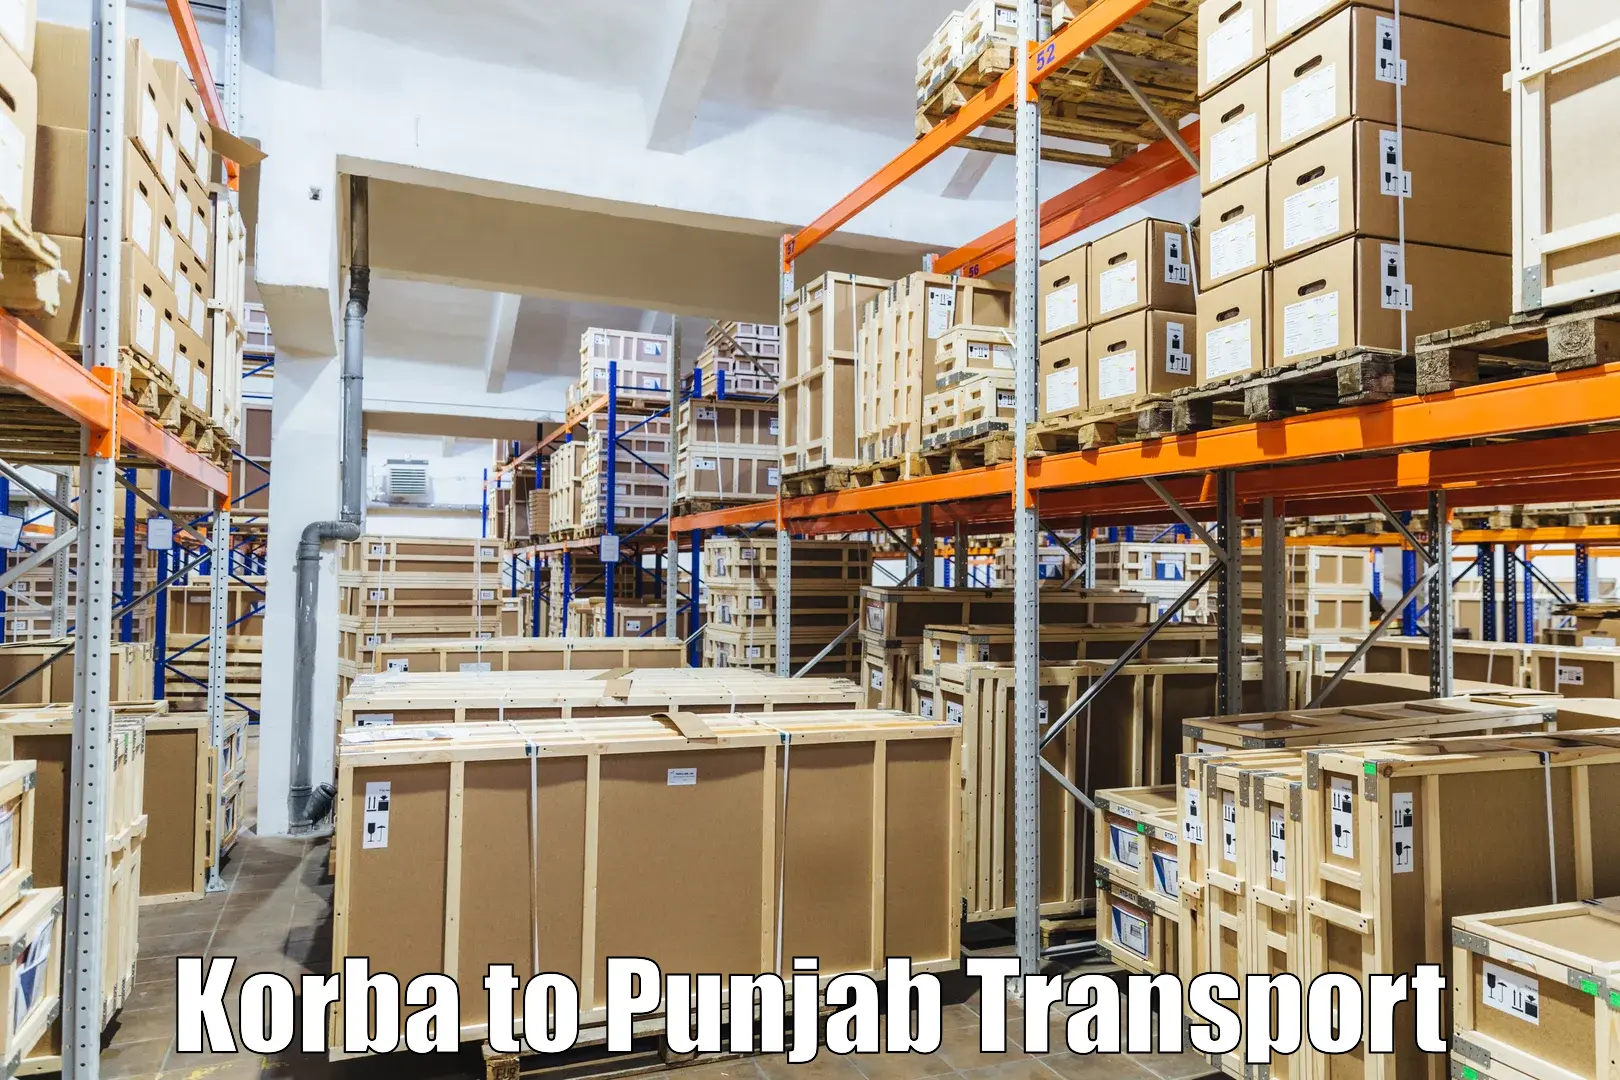 Transport shared services Korba to Rupnagar